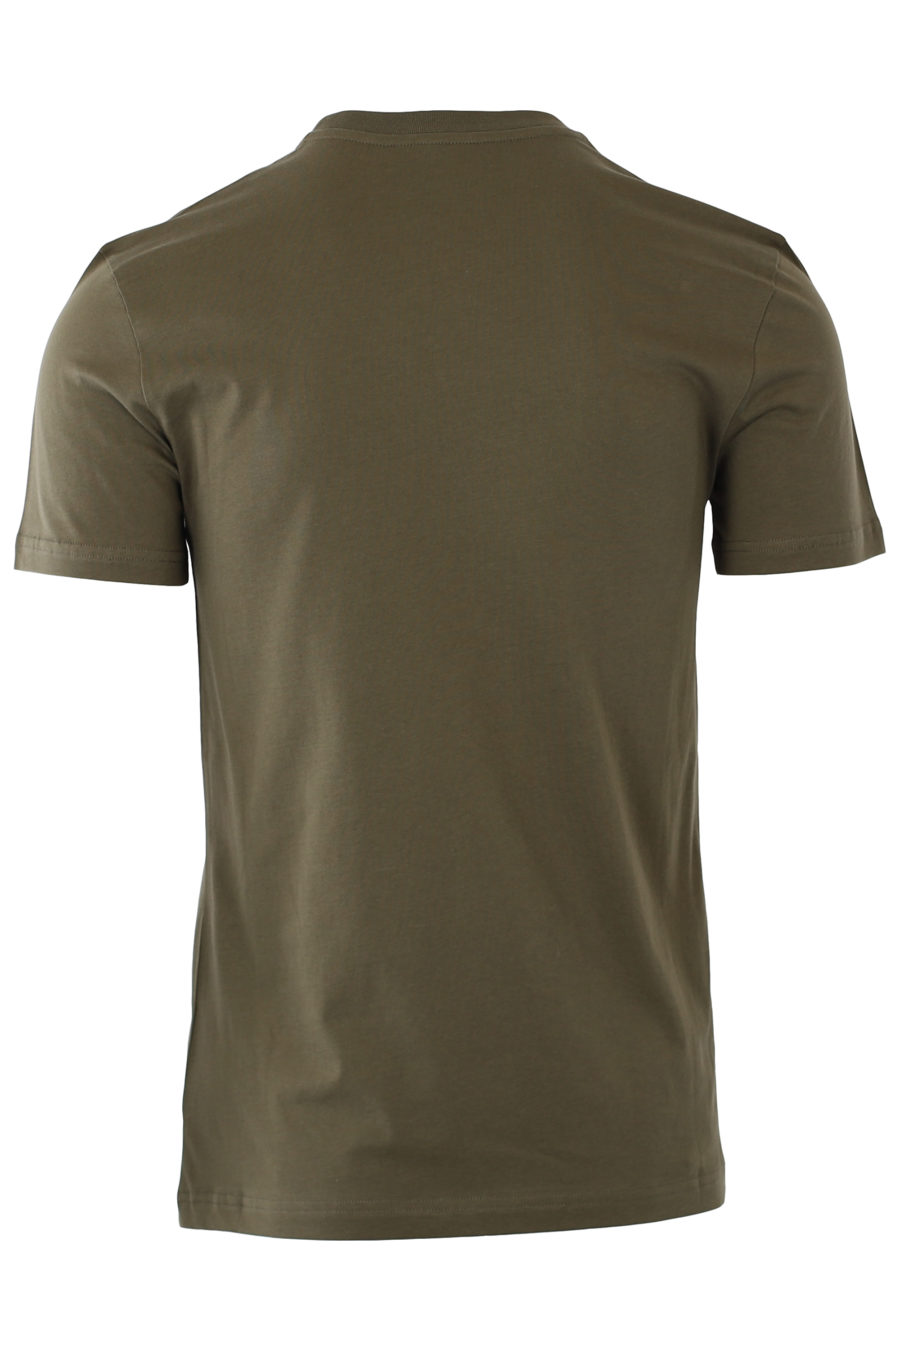 Camiseta verde militar con logo doble pregunta monocromático - IMG 9320